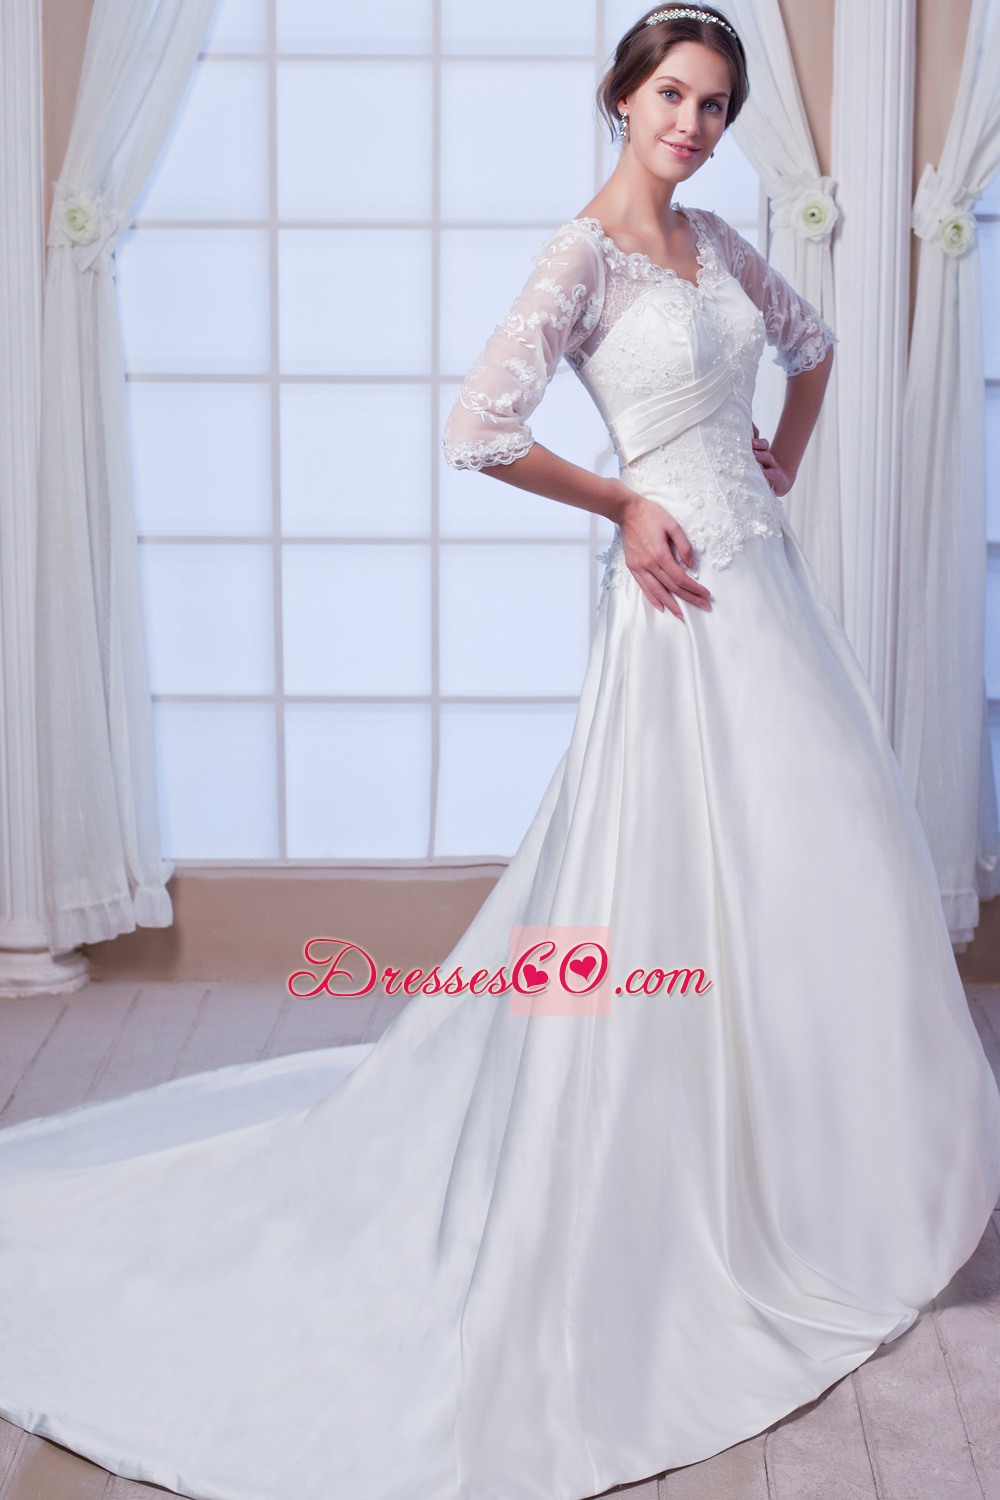 Elegant A-line / Princess V-neck Court Train Satin Appliques Wedding Dress